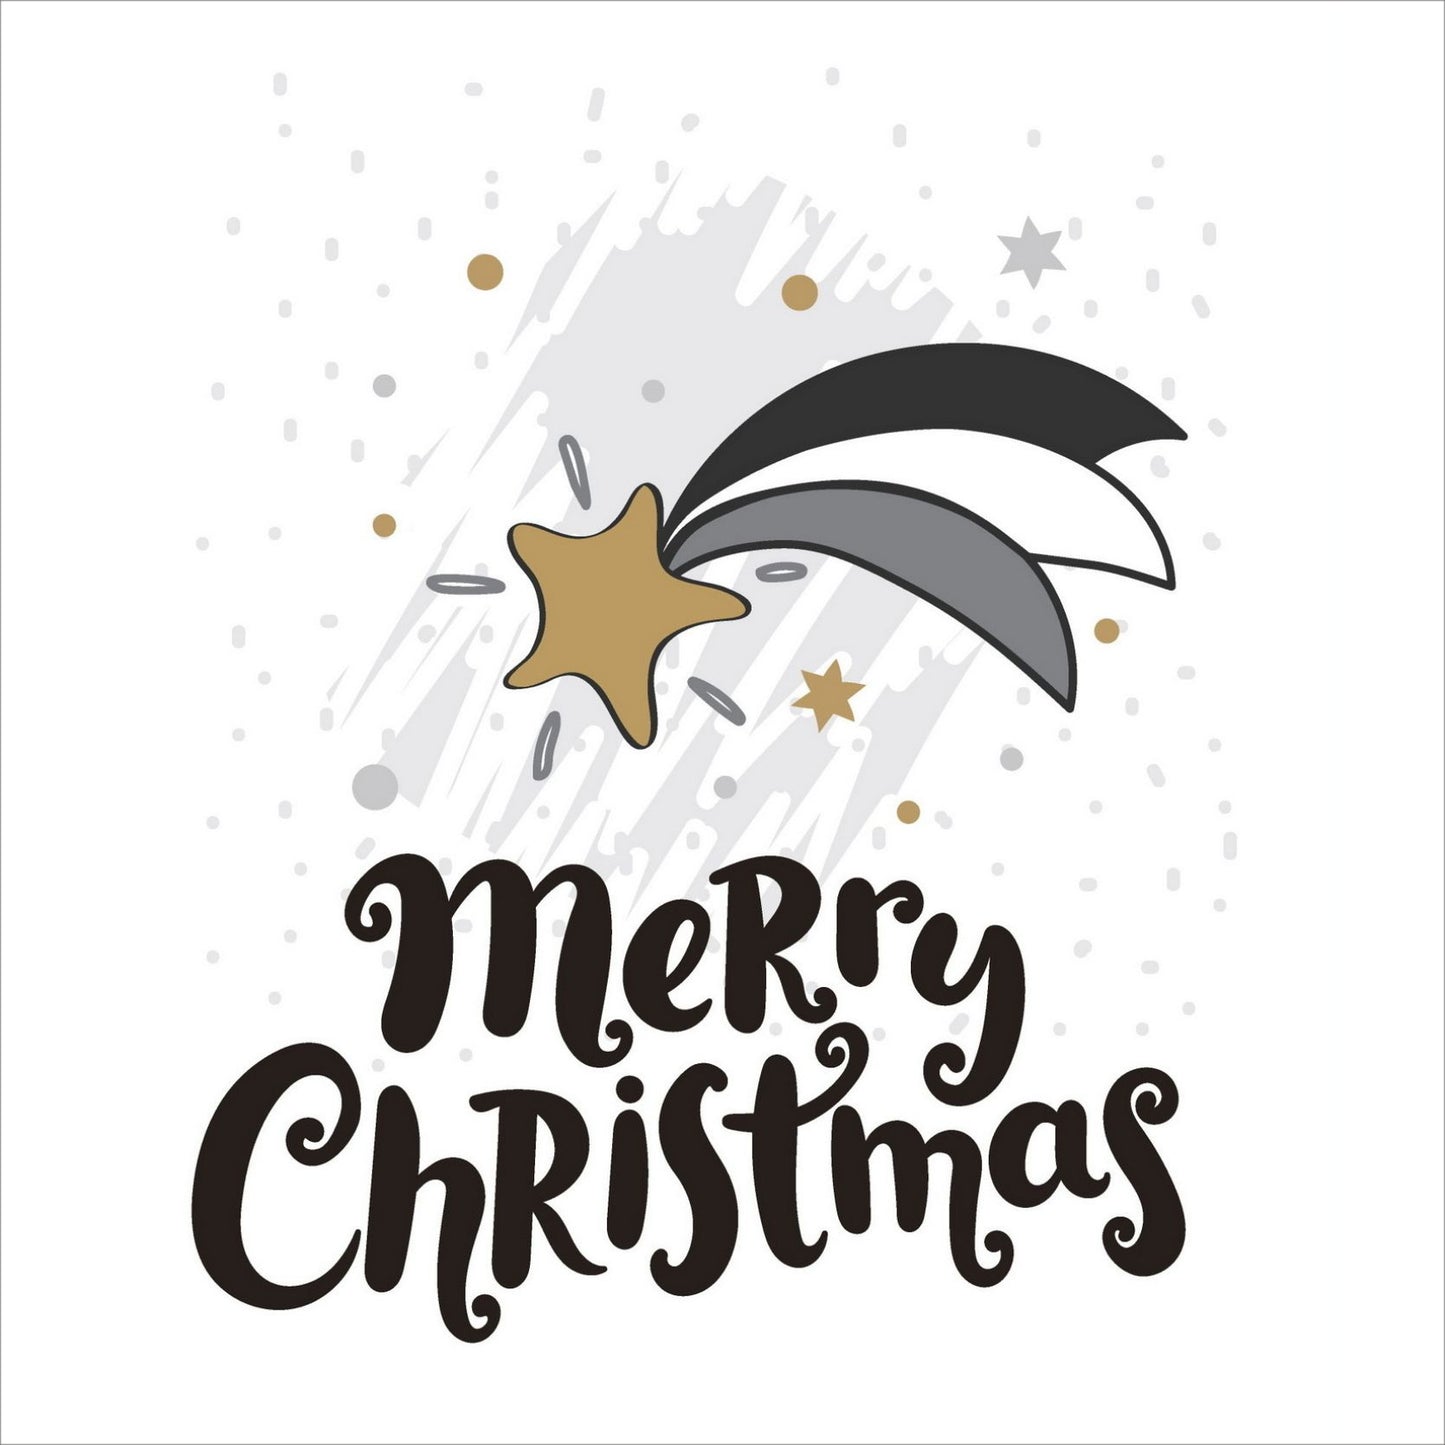 Søte julekort i håndtegnet cartoon. 10 pk. Fargemyanser i grå, sort, hvit og gull. Motiv av en julestjerne. Tekst på kort "merry christmas"